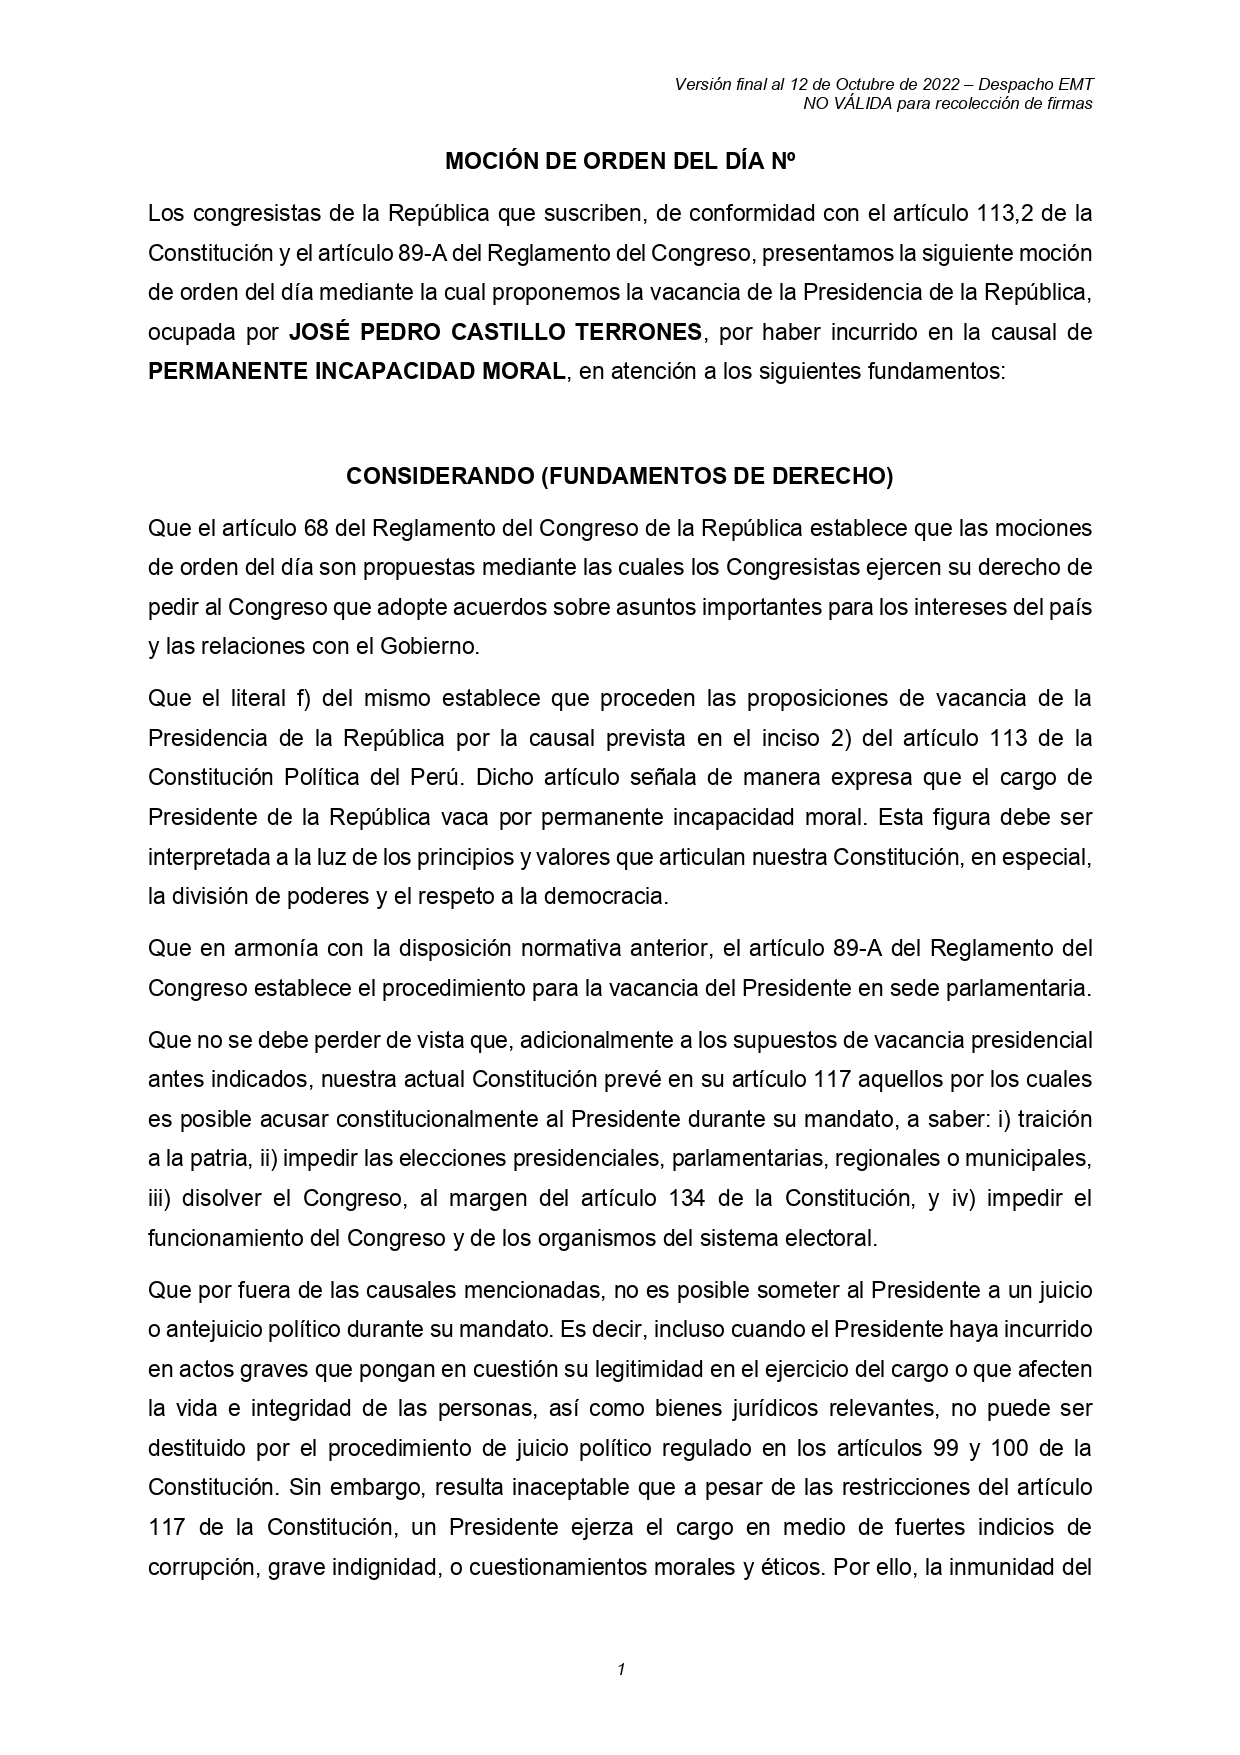 El legislador Edward Málaga recolectará firmas en el Congreso para vacar por incapacidad moral al presidente Castillo.